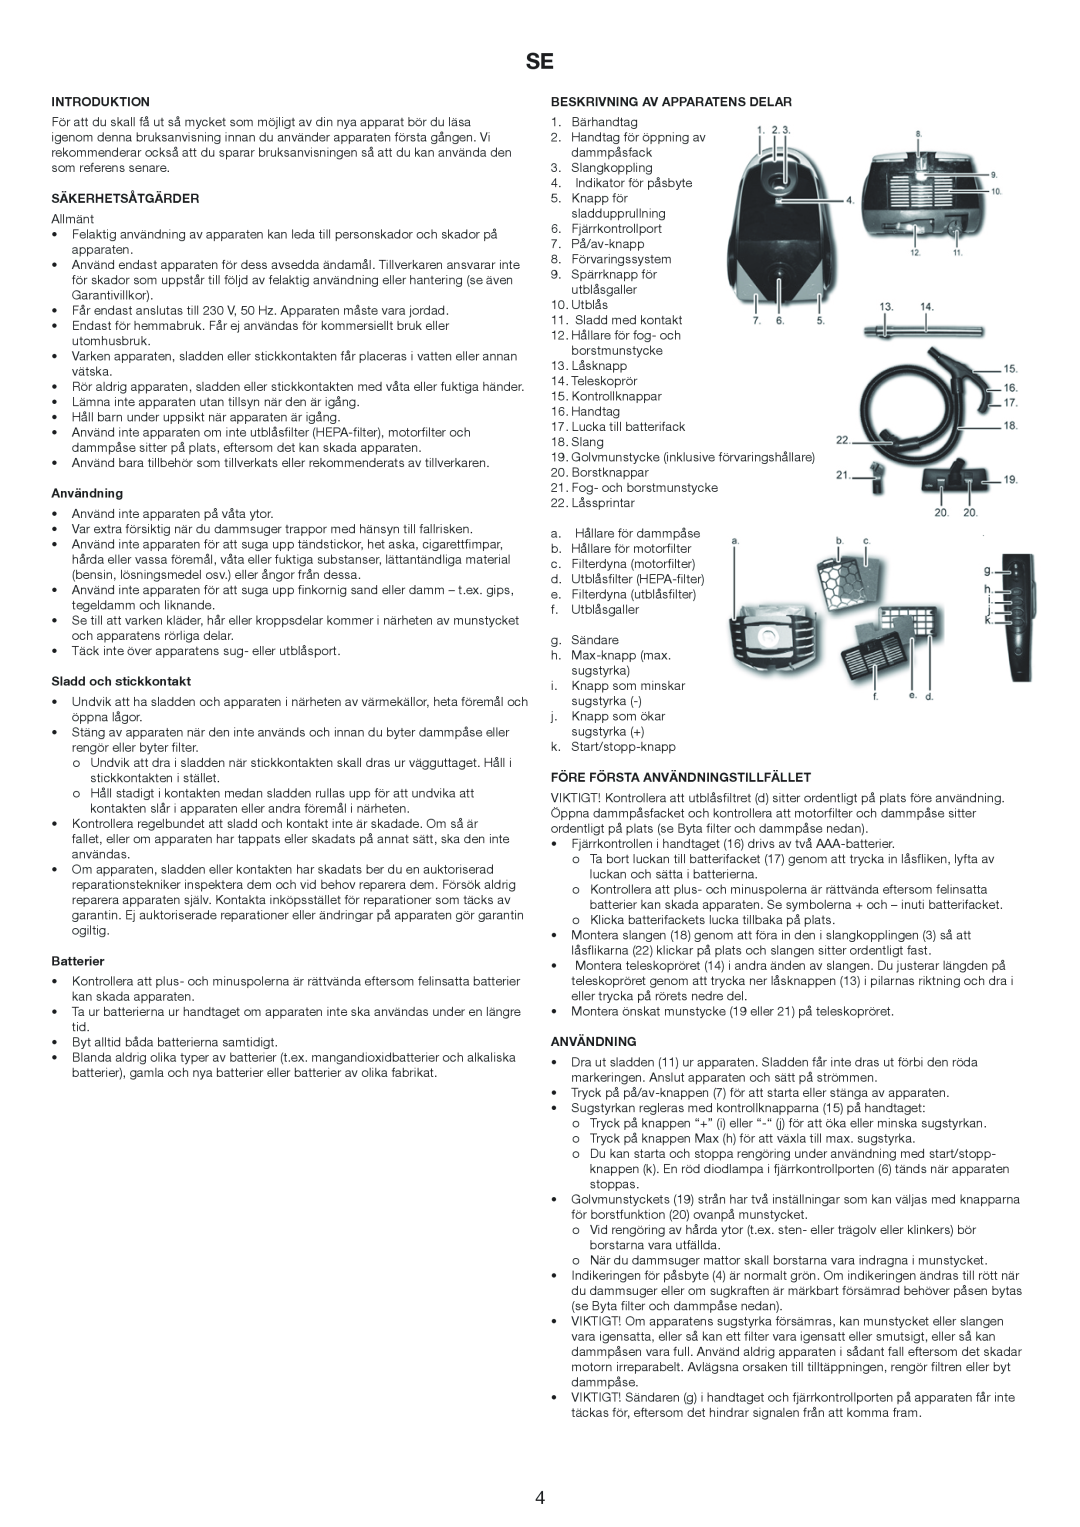 Melissa 640-174 manual Introduktion, Säkerhetsåtgärder, Användning, Sladd och stickkontakt, Batterier 